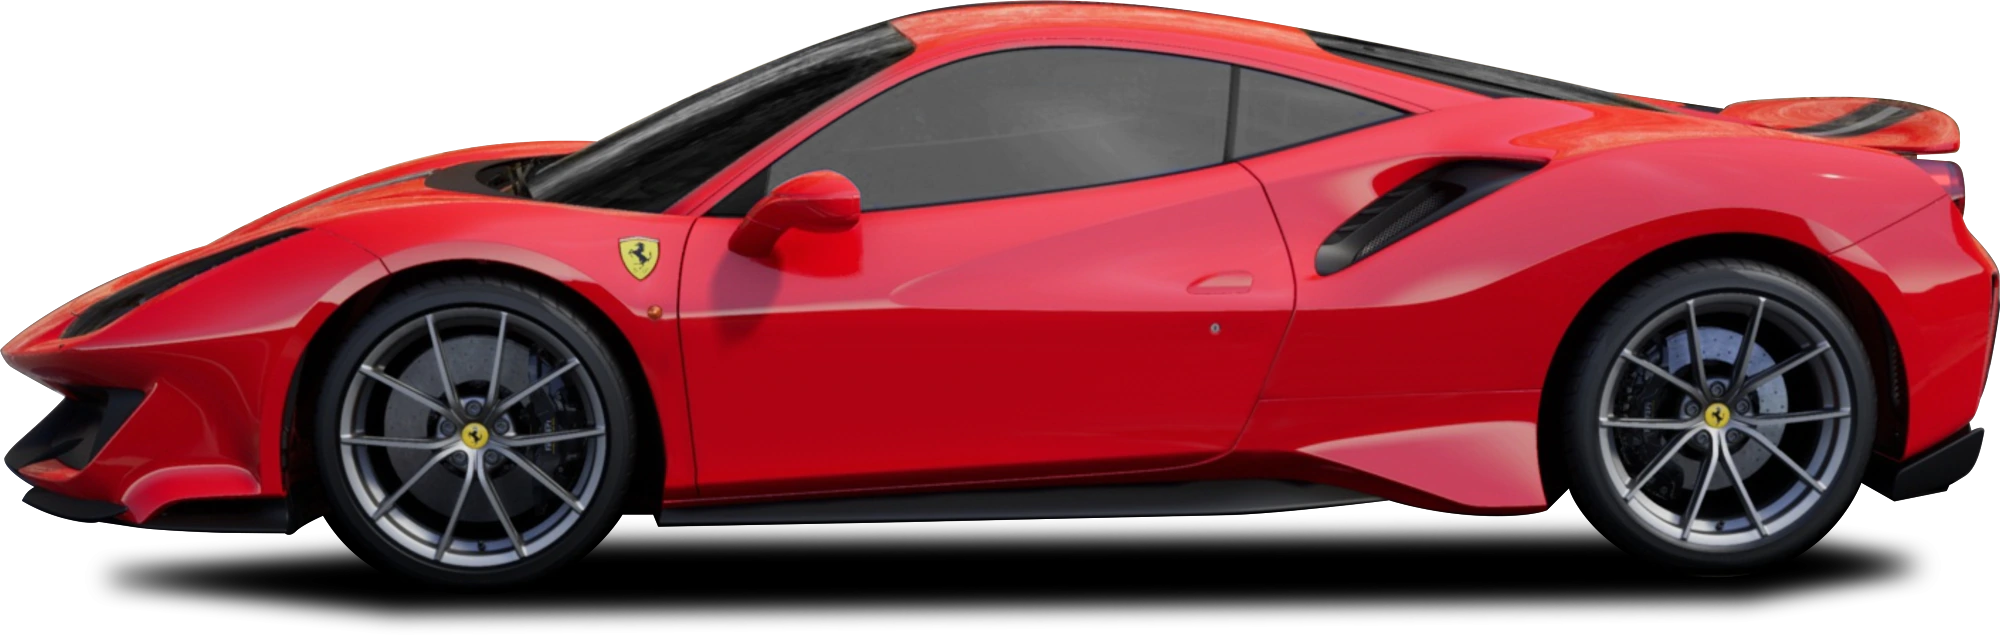 Red Ferrari GTC4LUSSO Transparentes Bild